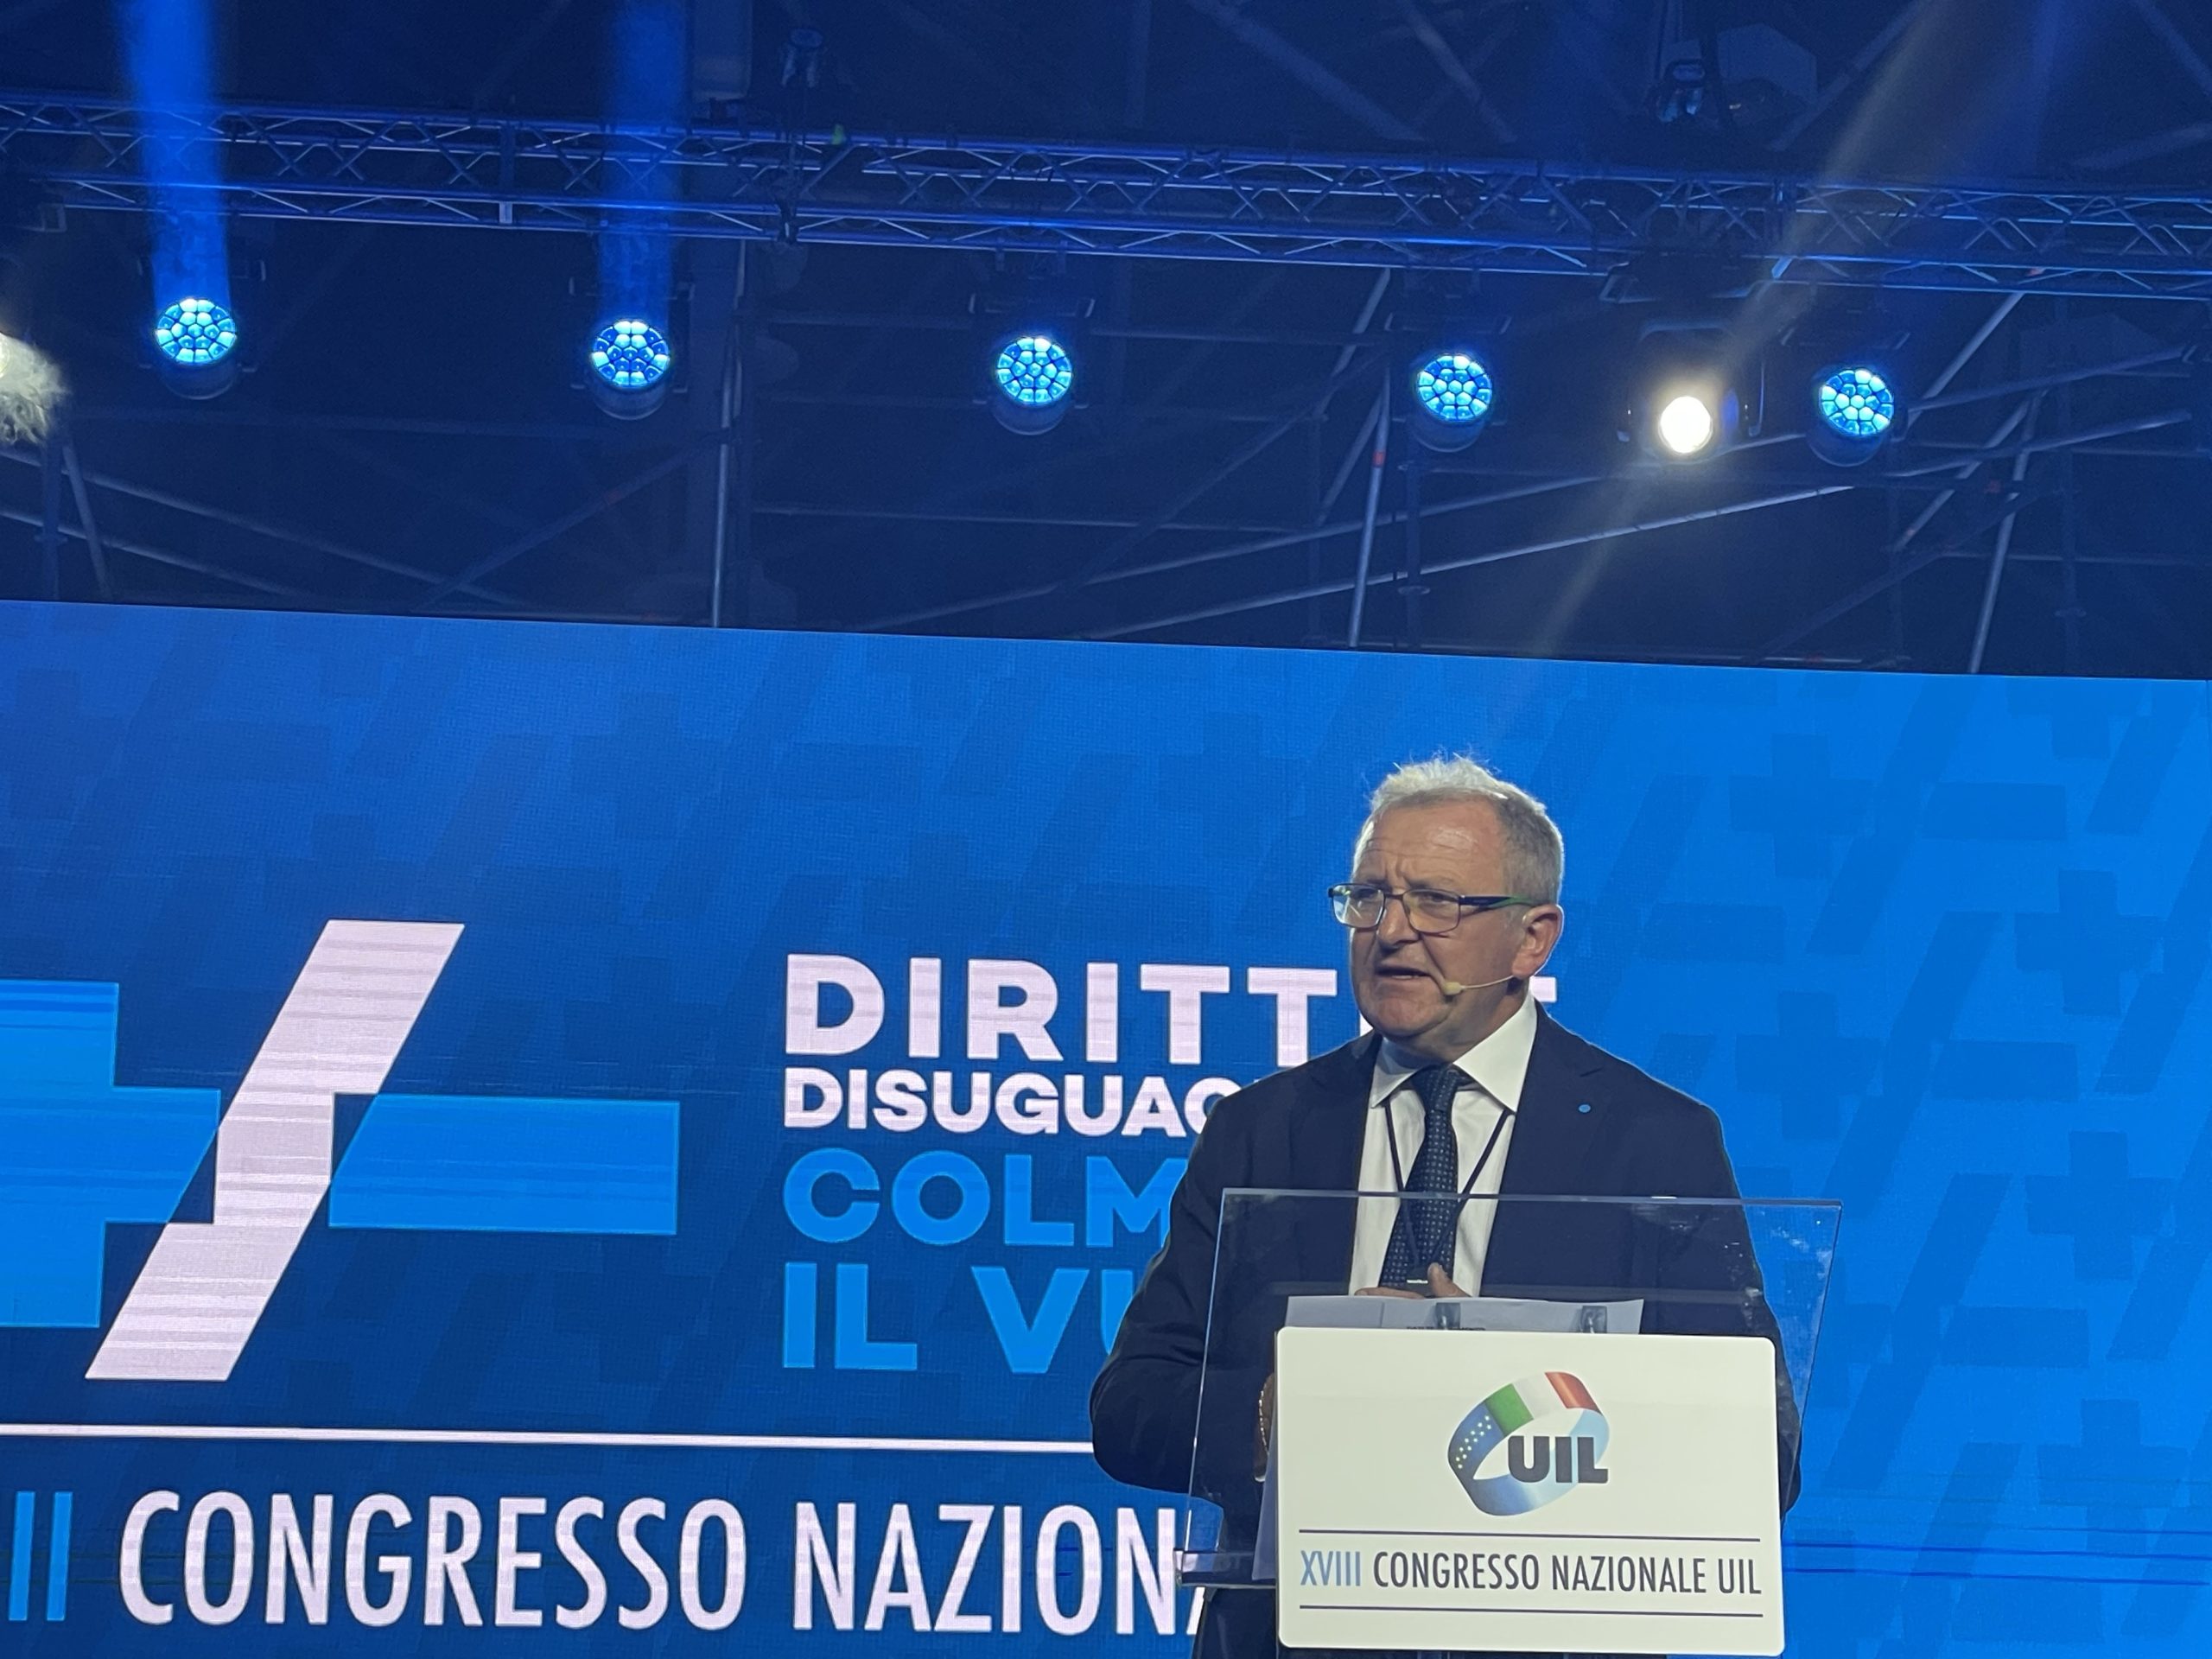 XVIII Congresso Nazionale Uil, l'intervento del Segretario Generale Claudio Tarlazzi